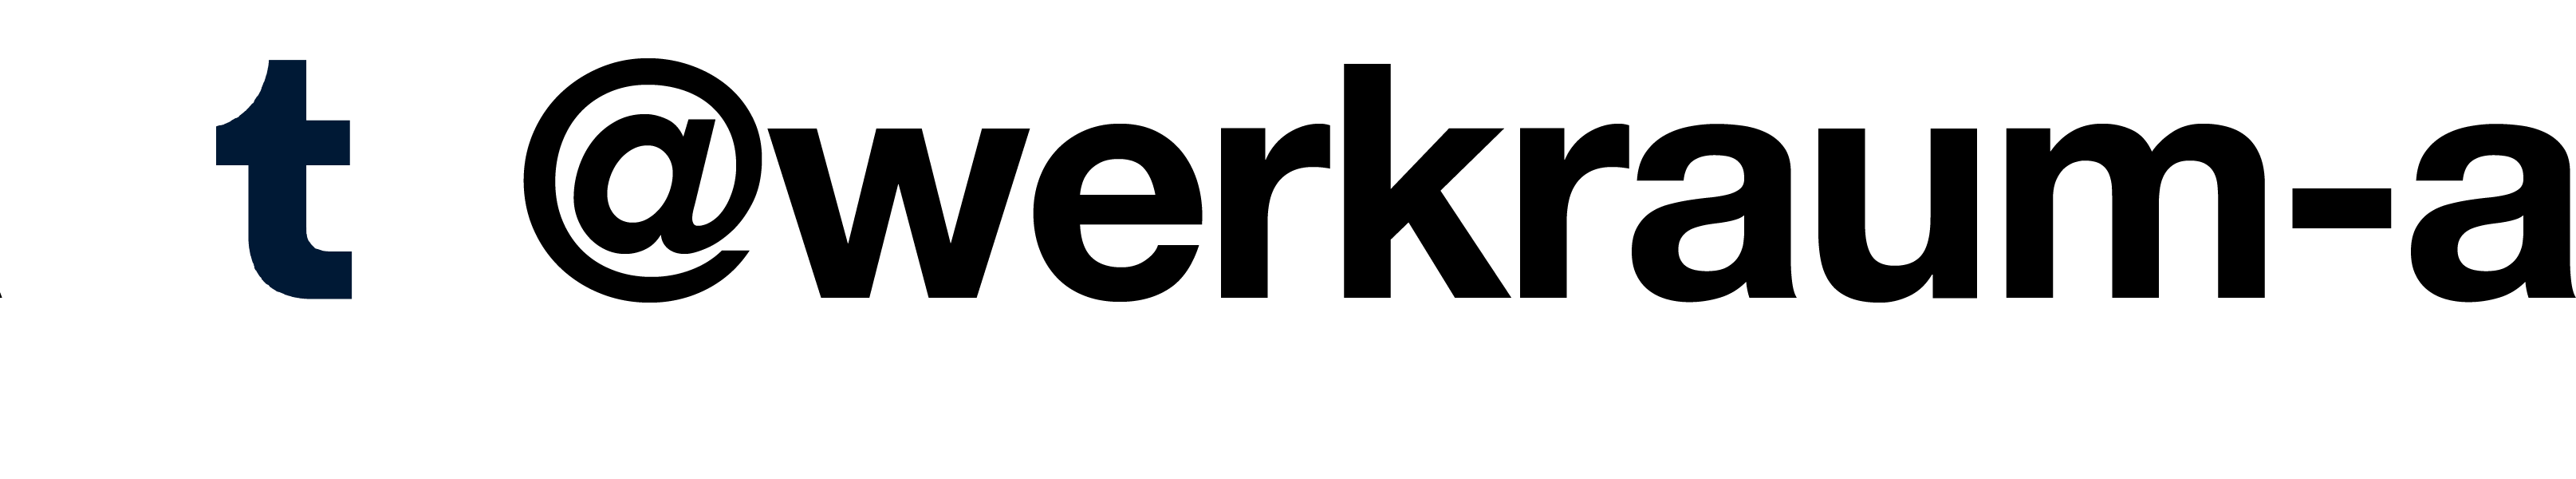 Logo Tumblr, Link zu Werkraum_A